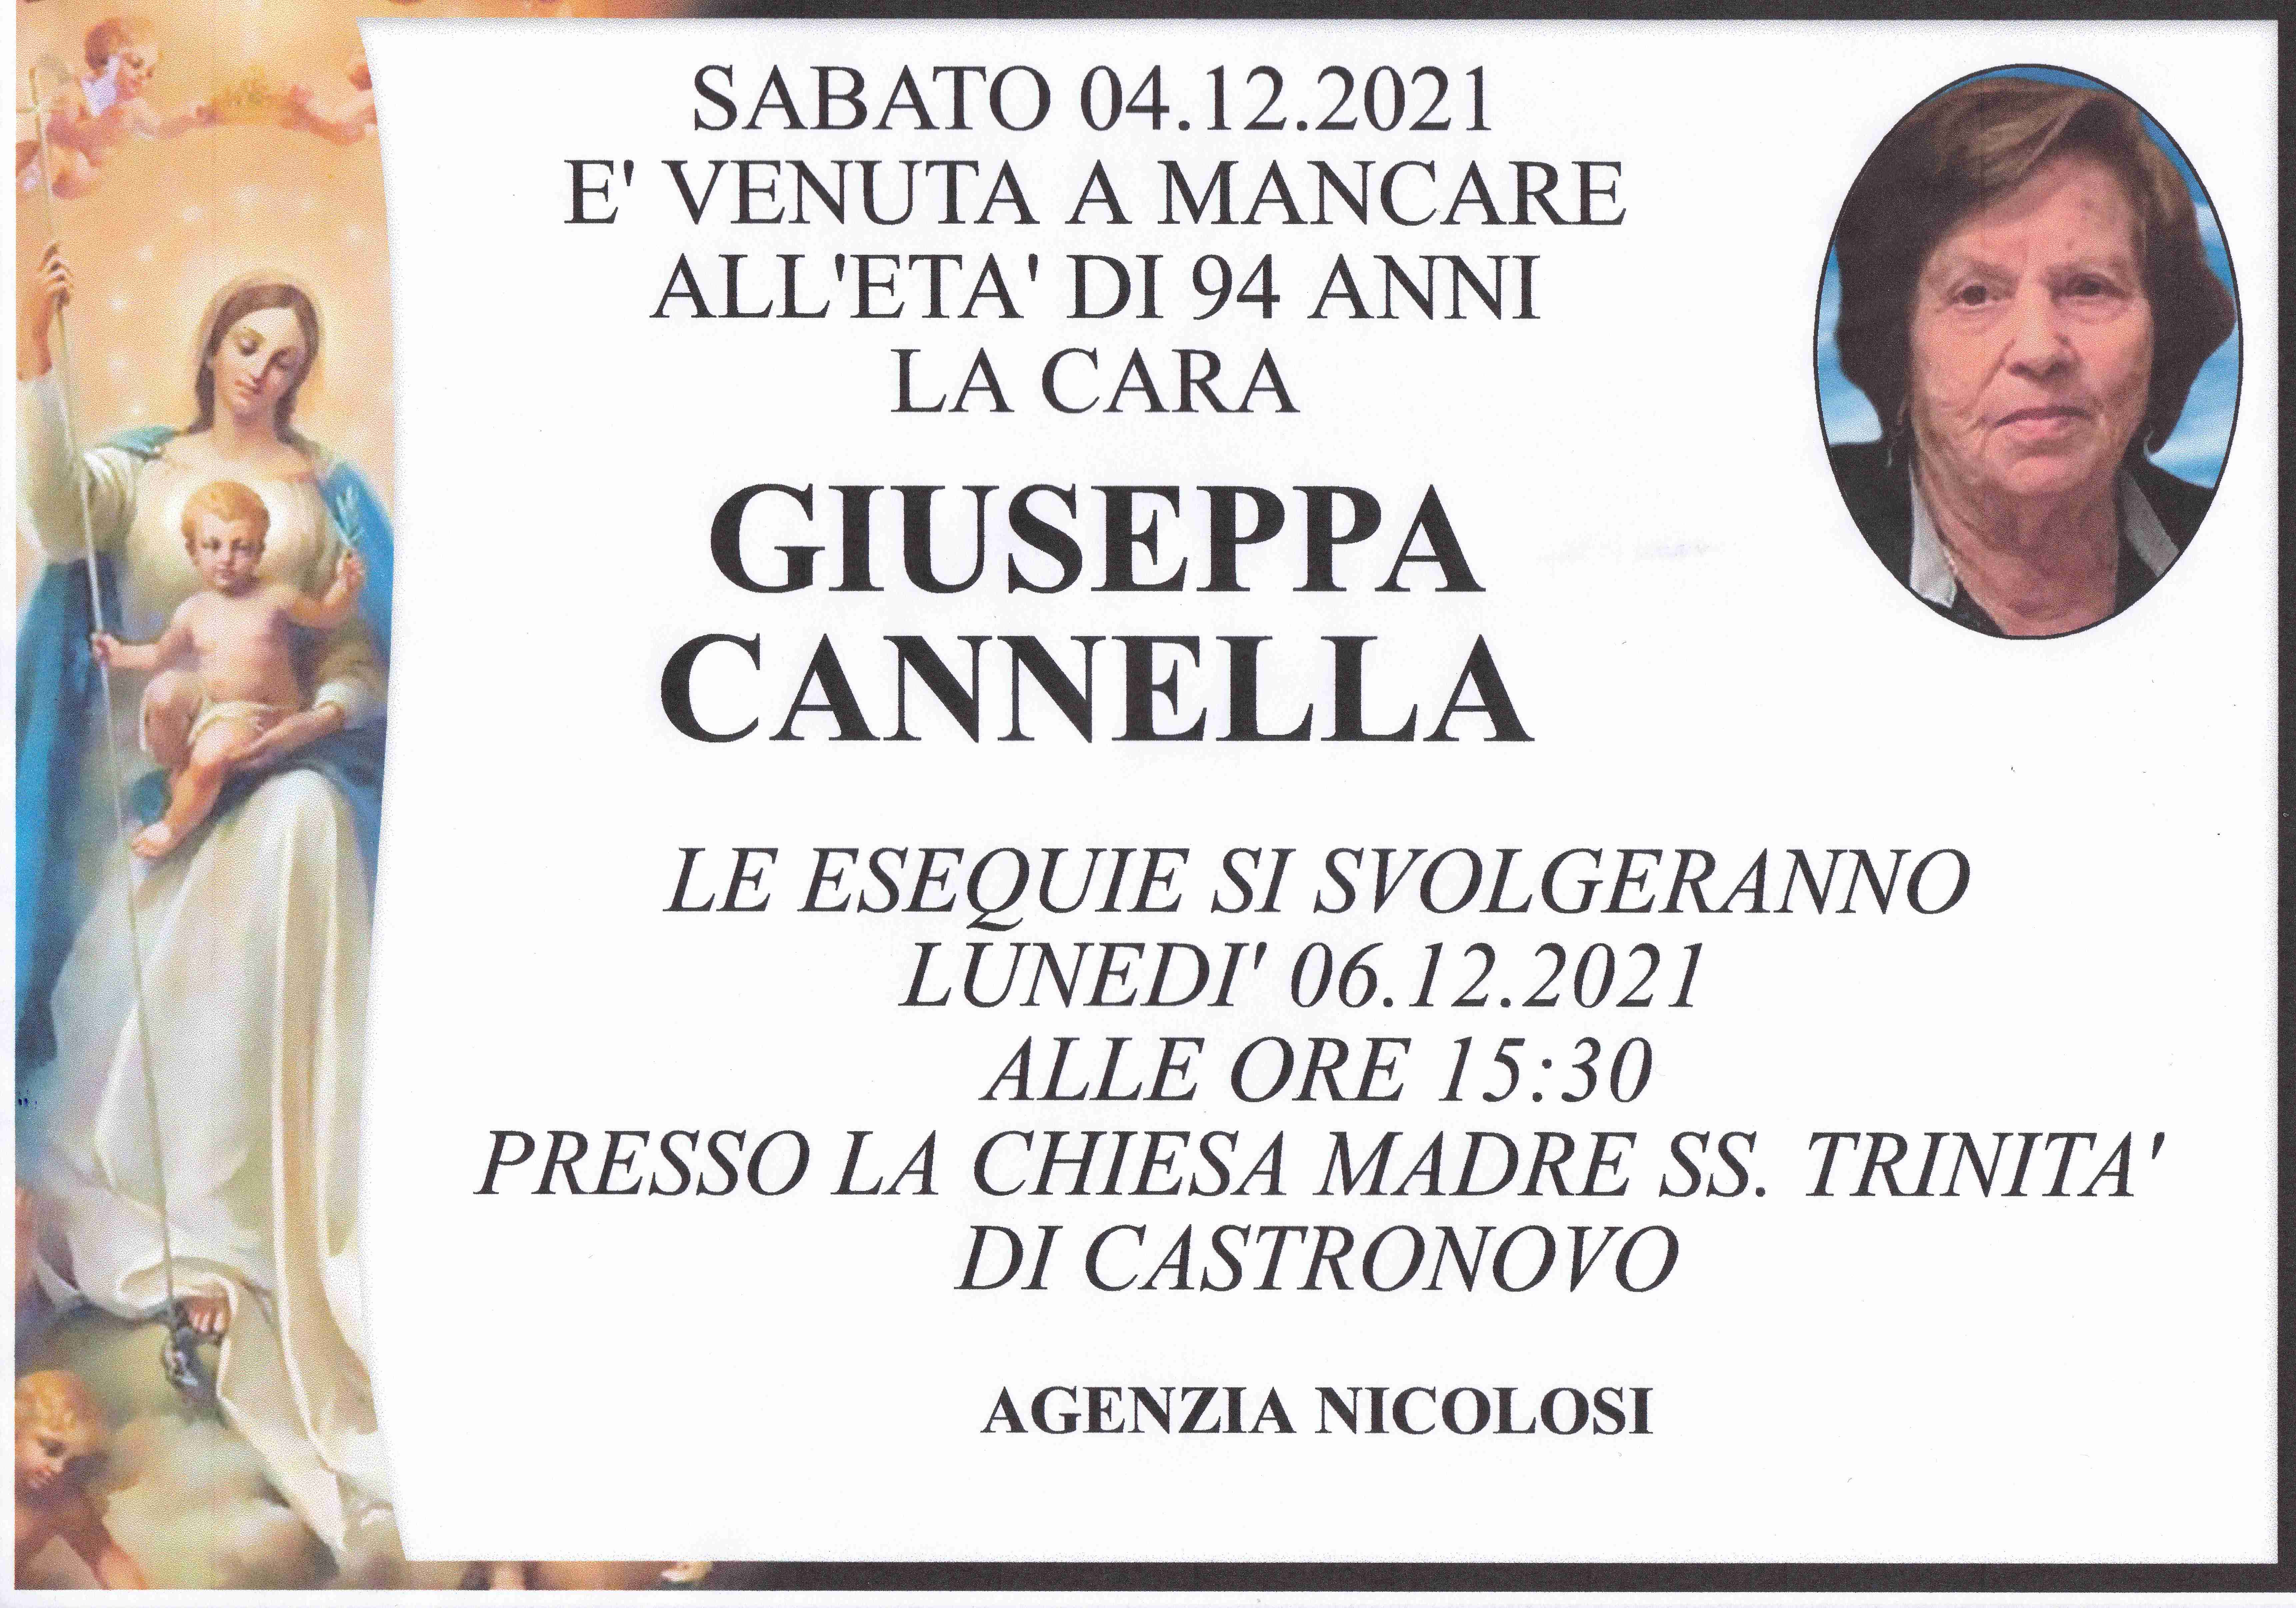 Giuseppa Cannella